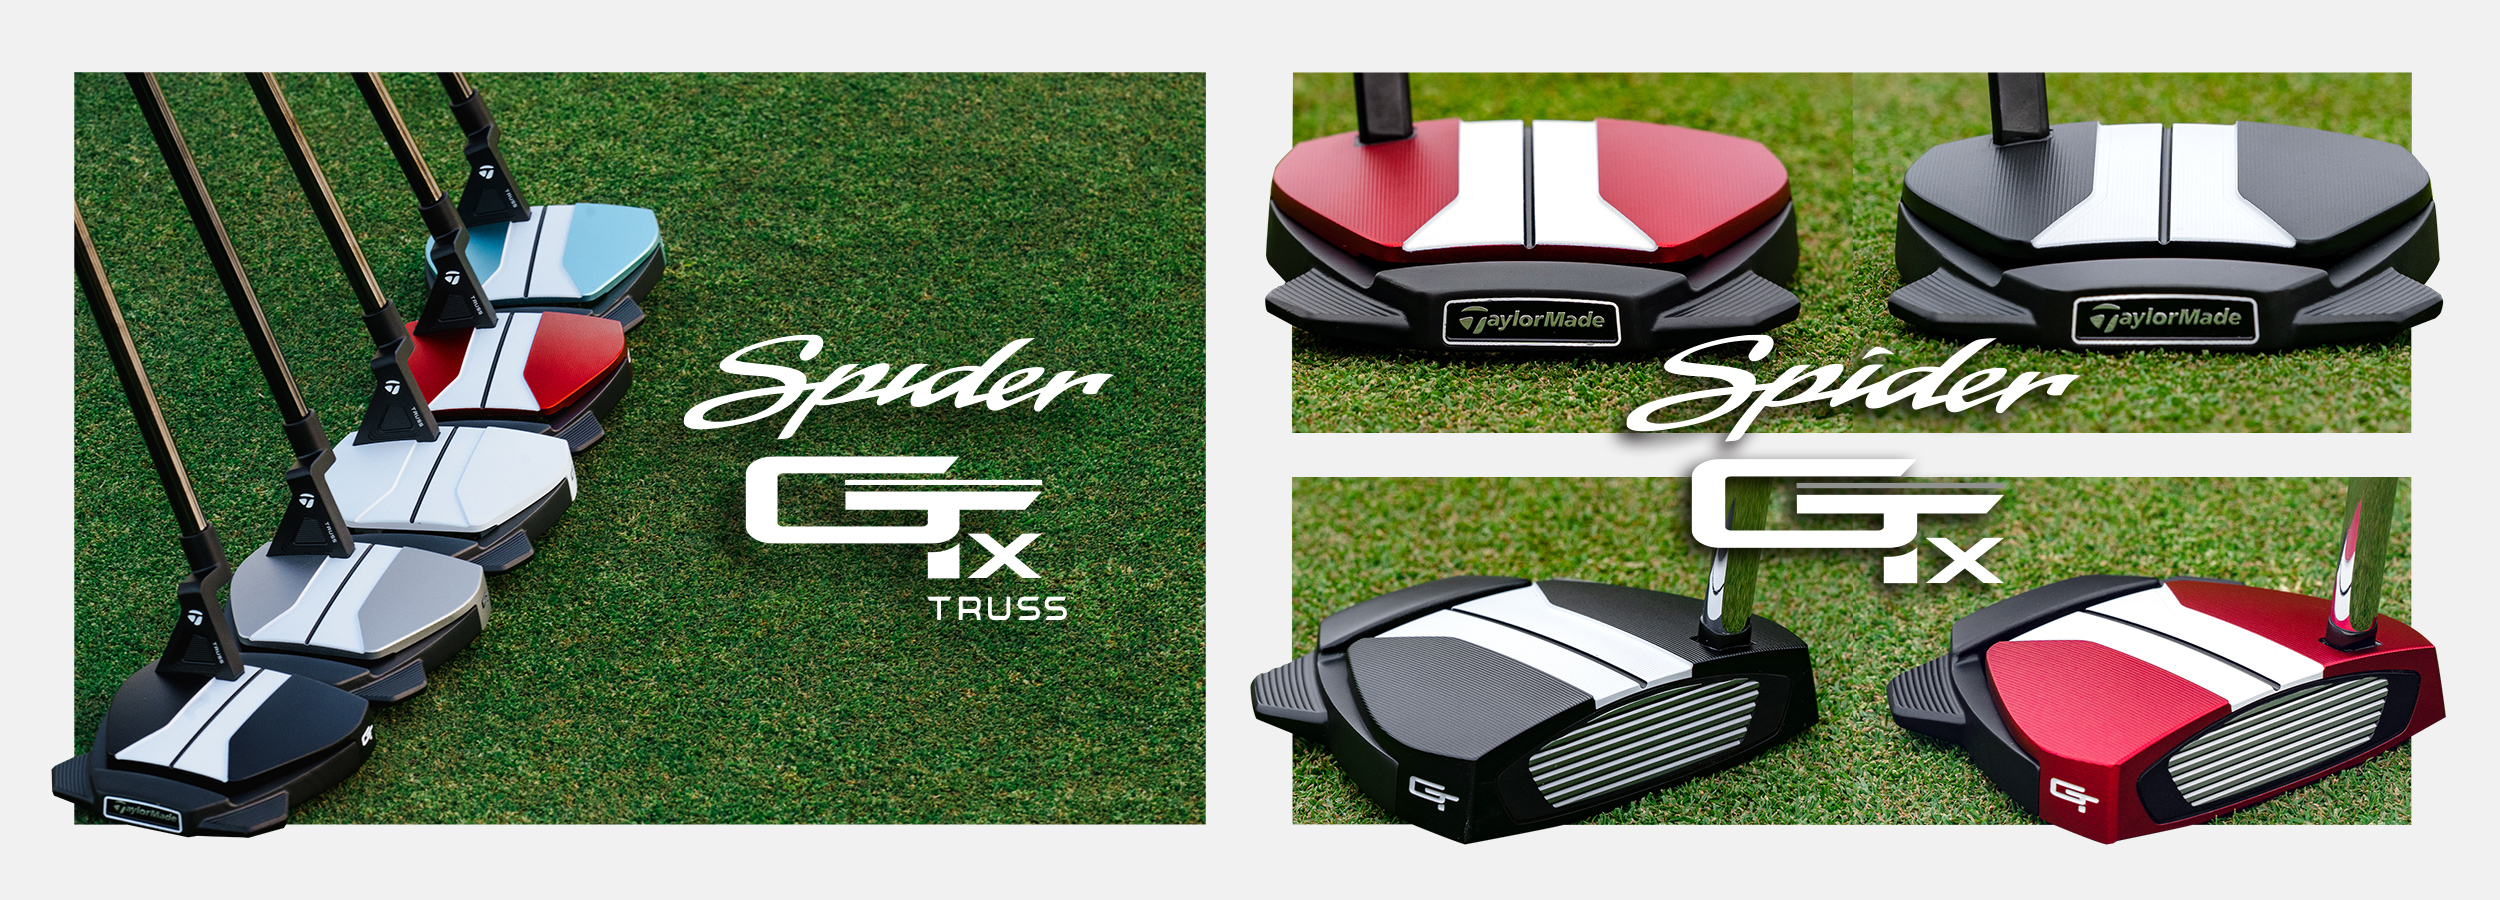 スパイダーGT X ブラック スモールスラント パター | SPIDER GT X BLACK Small Slant | TaylorMade  Golf | テーラーメイド ゴルフ公式サイト